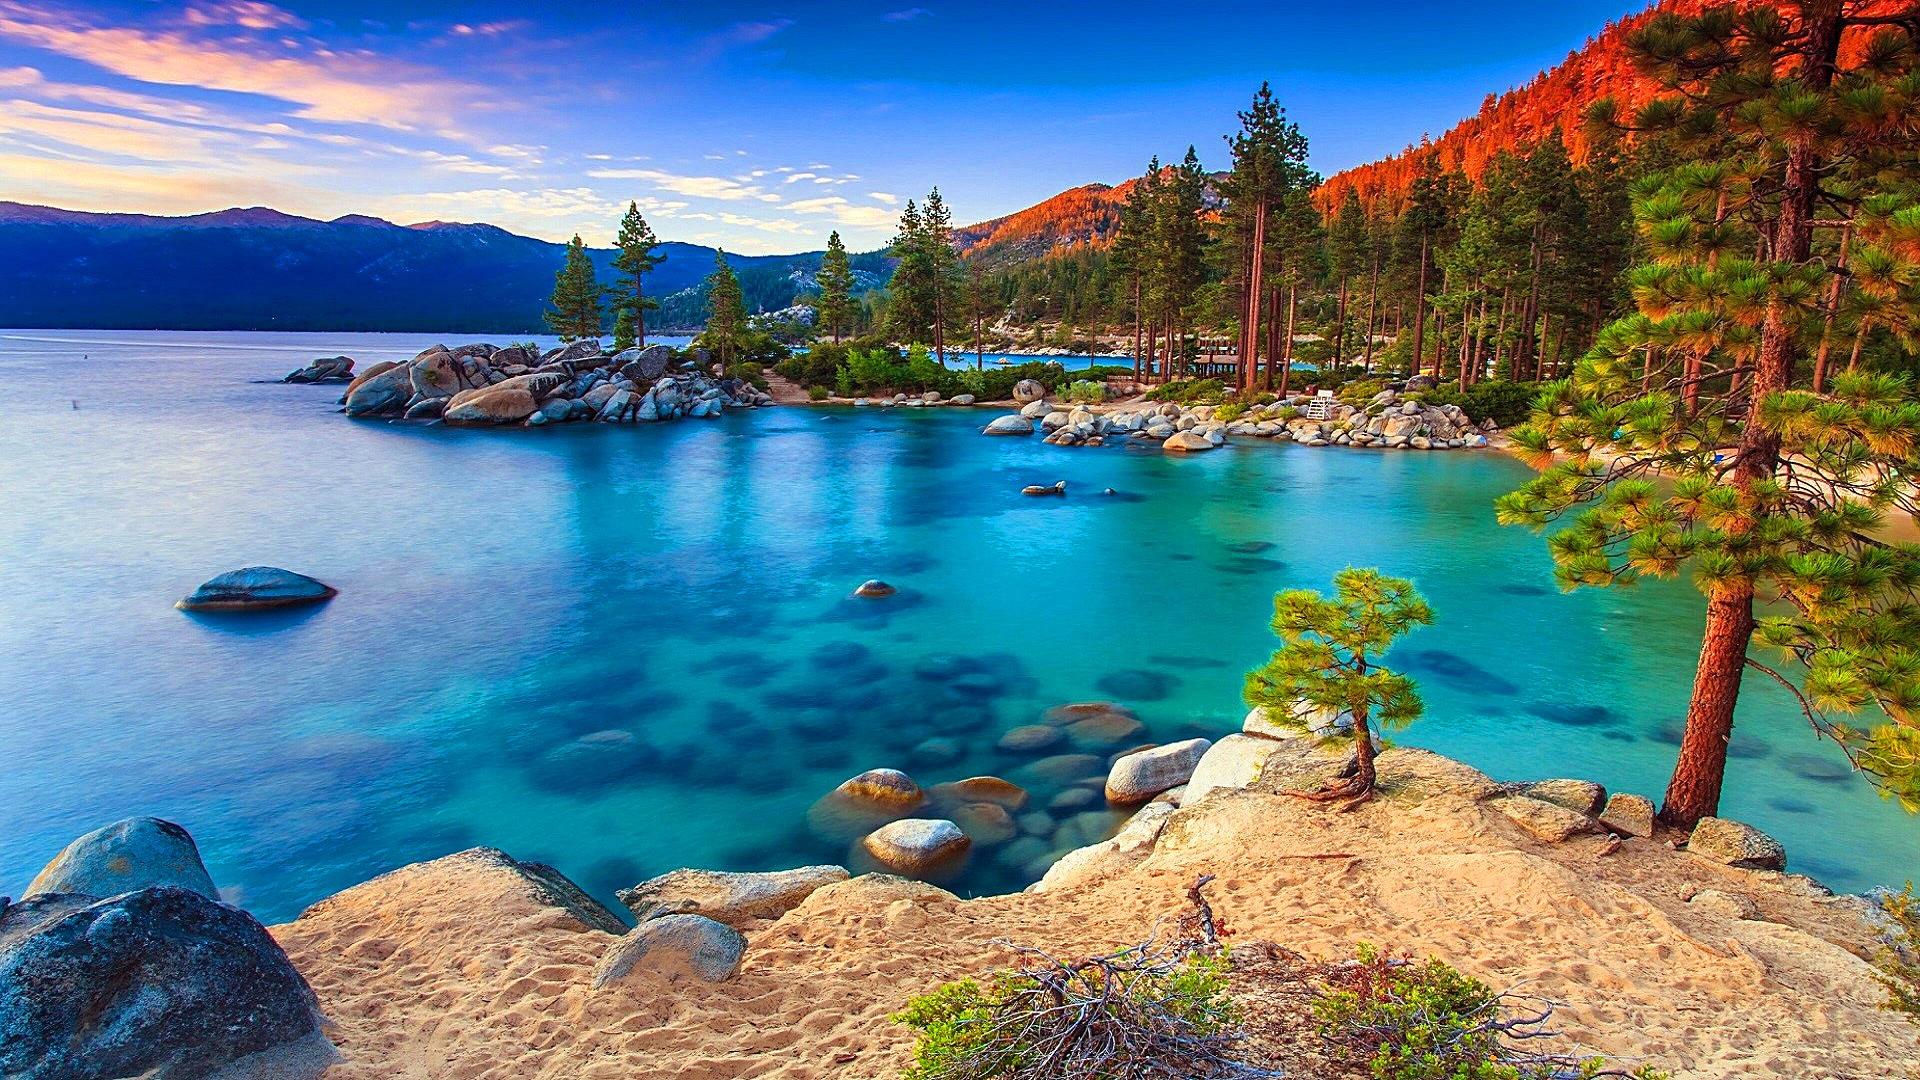 Tình yêu với Lake Tahoe và muốn sở hữu một tác phẩm nghệ thuật cảnh đẹp này? TẢI ngay HÌNH NỀN Lake Tahoe MIỄN PHÍ để cập nhật cho màn hình điện thoại của bạn một vẻ đẹp hoàn toàn mới lạ và thú vị nhất.